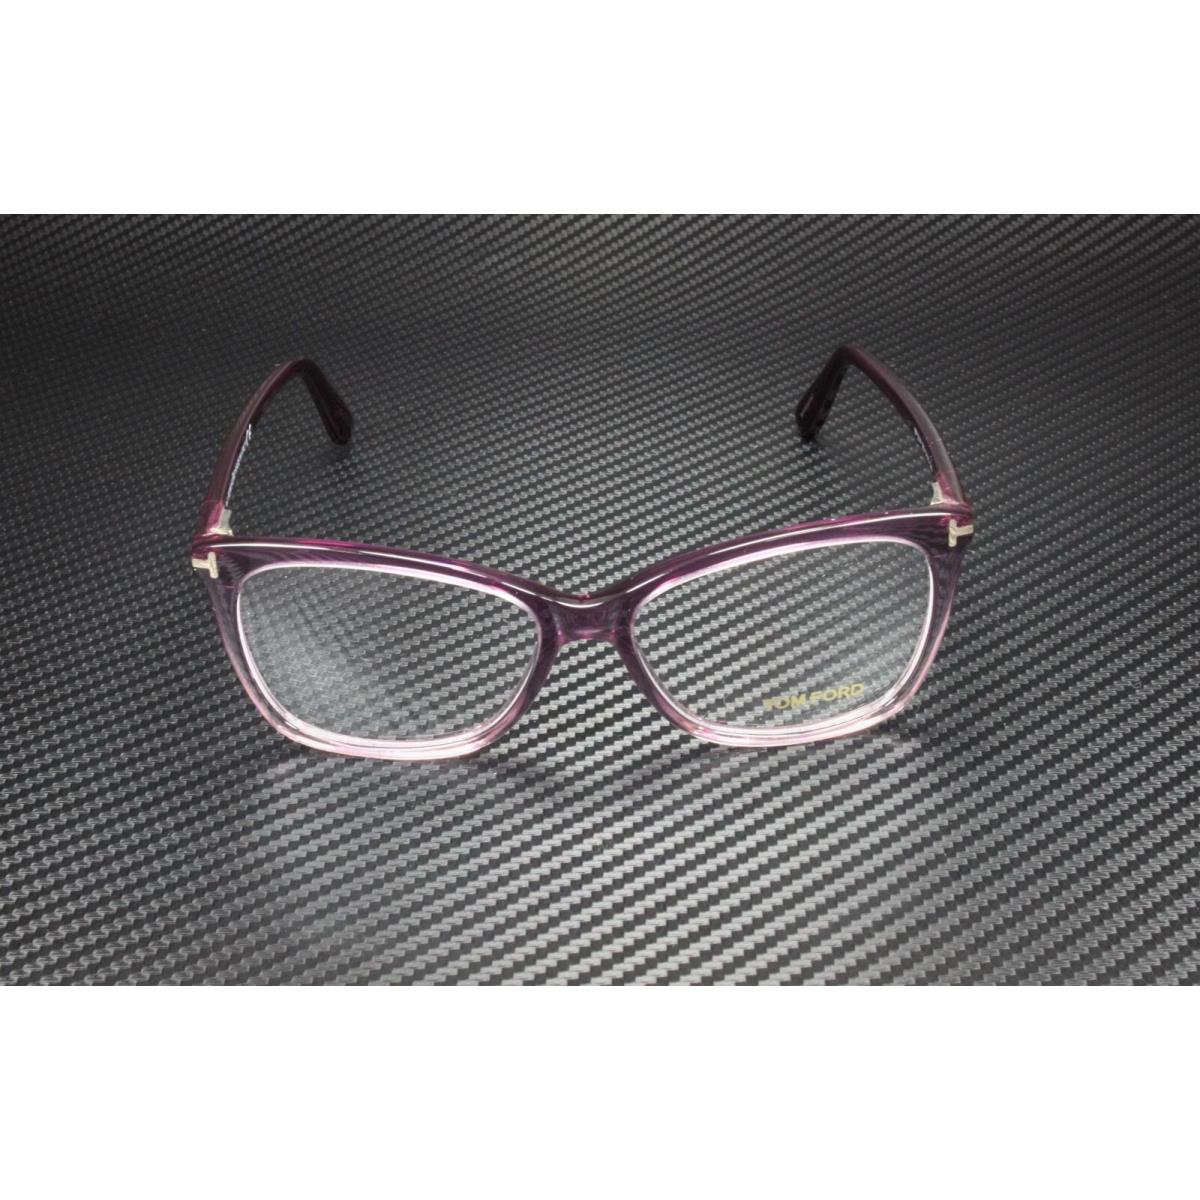 Tom Ford FT5514 083 Violet Clear Lens Plastic 54 mm Women`s Eyeglasses - Frame: Violet